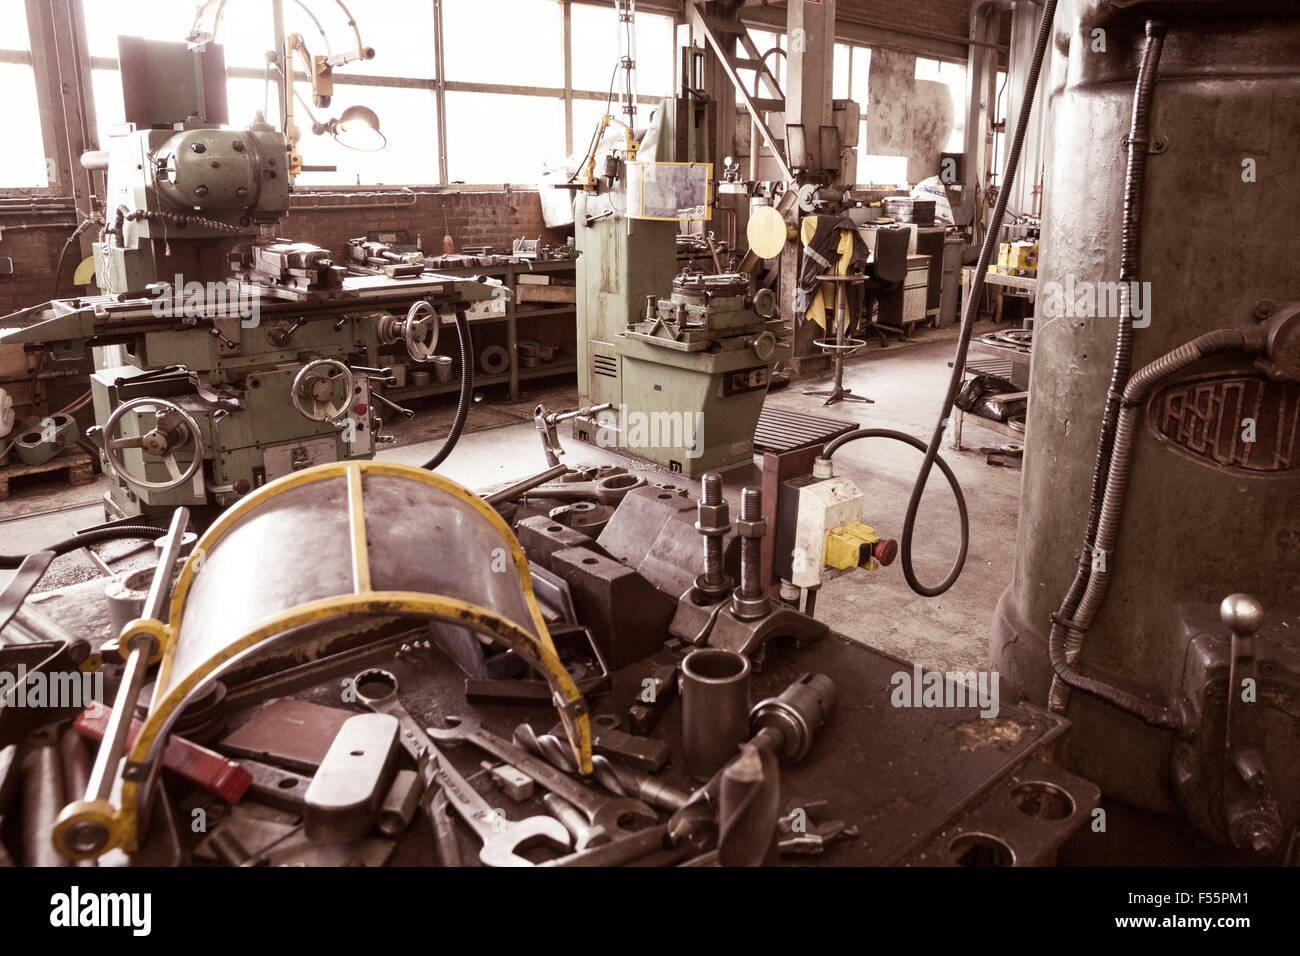 Les outils et l'équipement dans une usine industrielle Banque D'Images